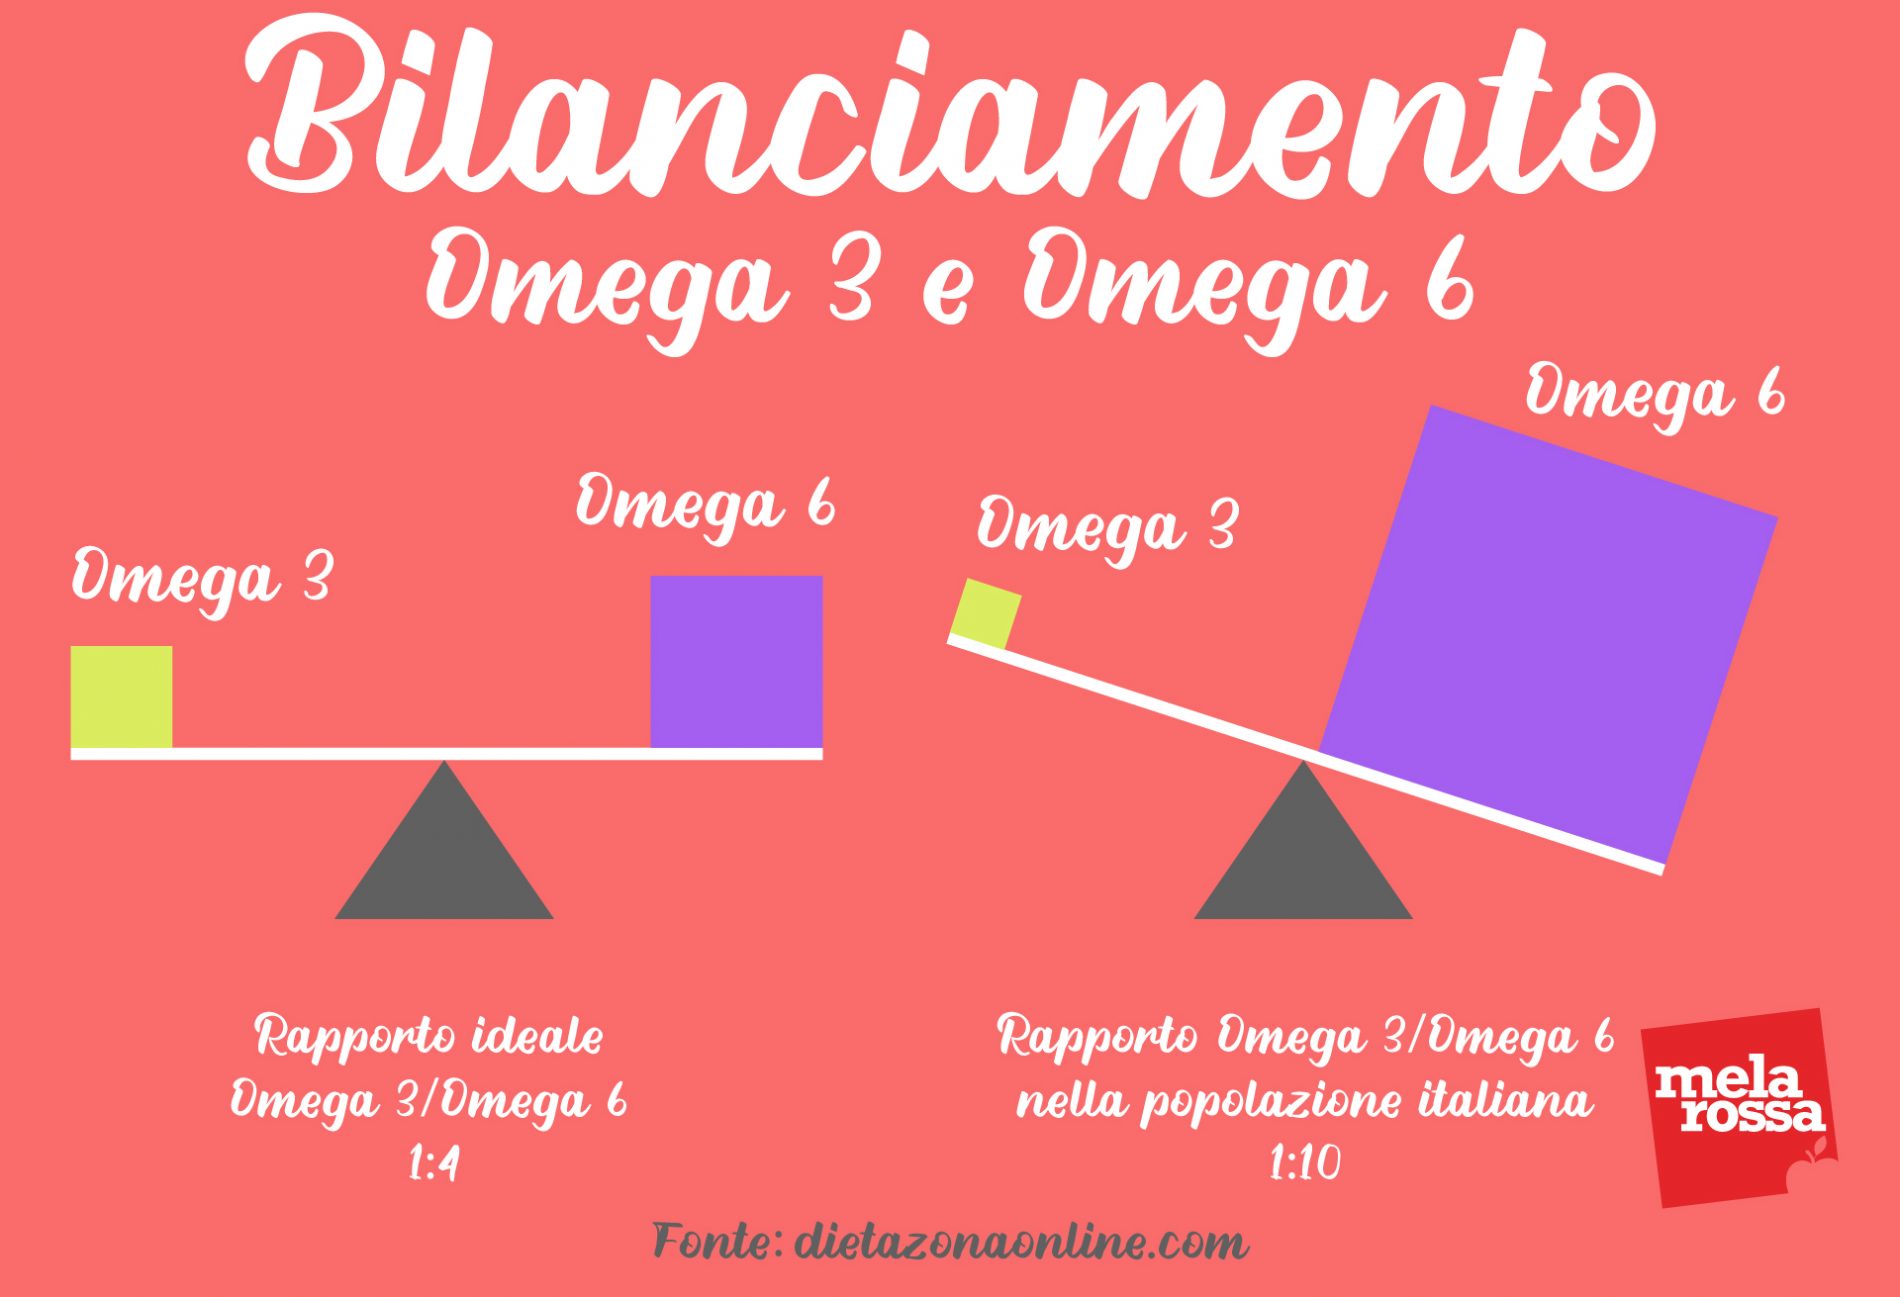 omega 3 e omega 6 bilanciamento